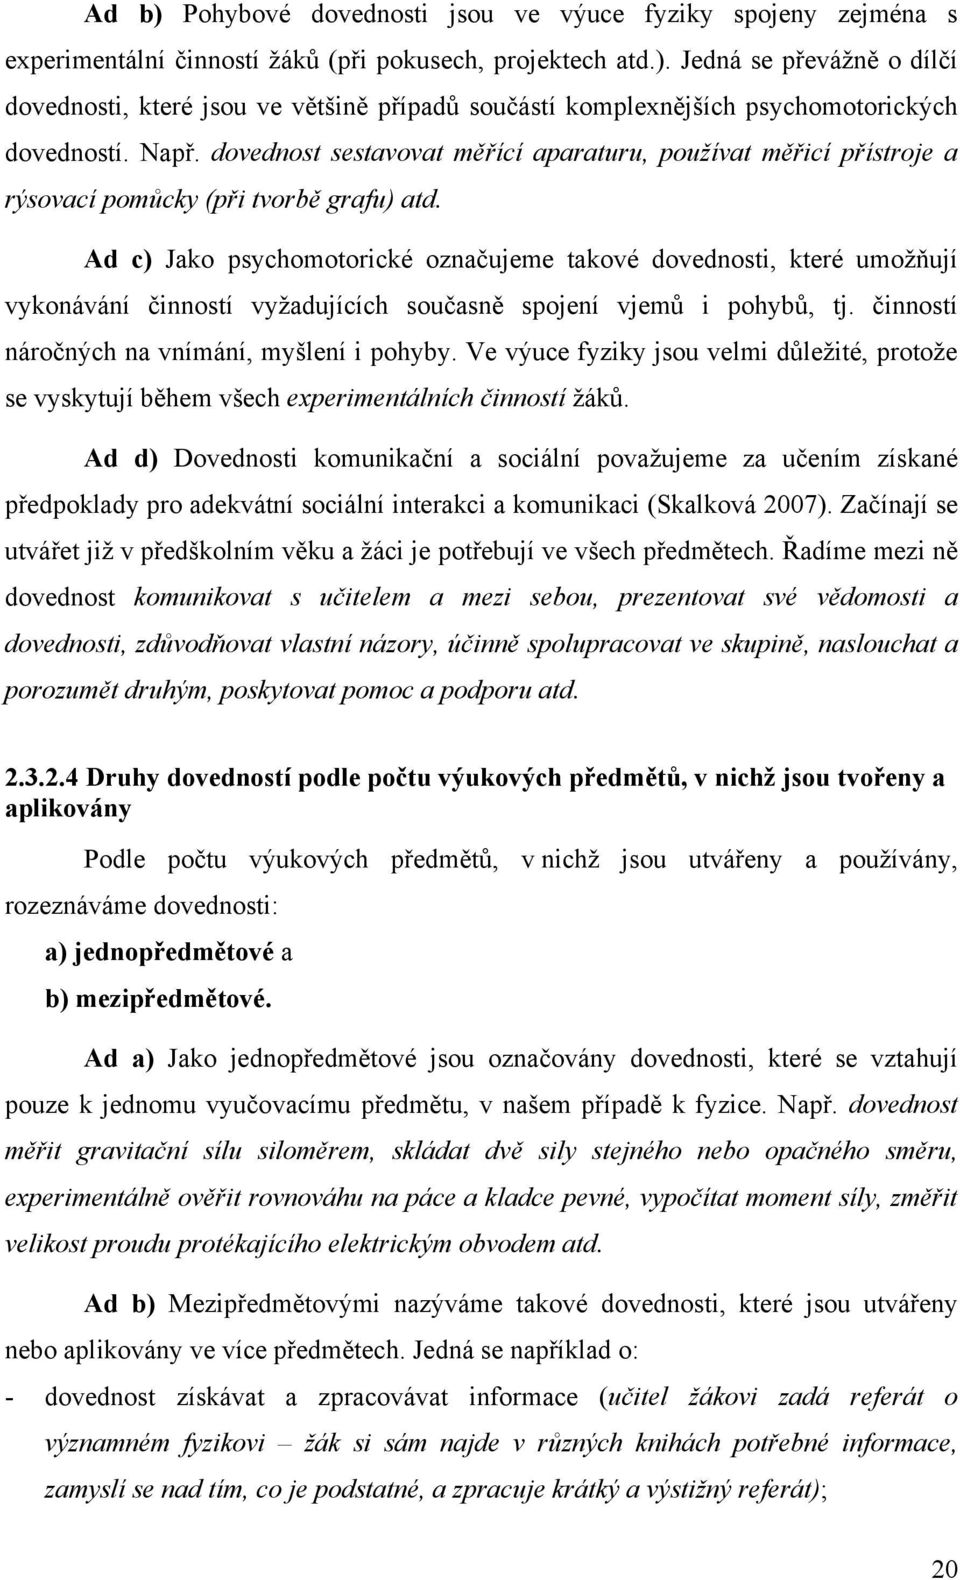 MASARYKOVA UNIVERZITA V BRNĚ PEDAGOGICKÁ FAKULTA - PDF Stažení zdarma